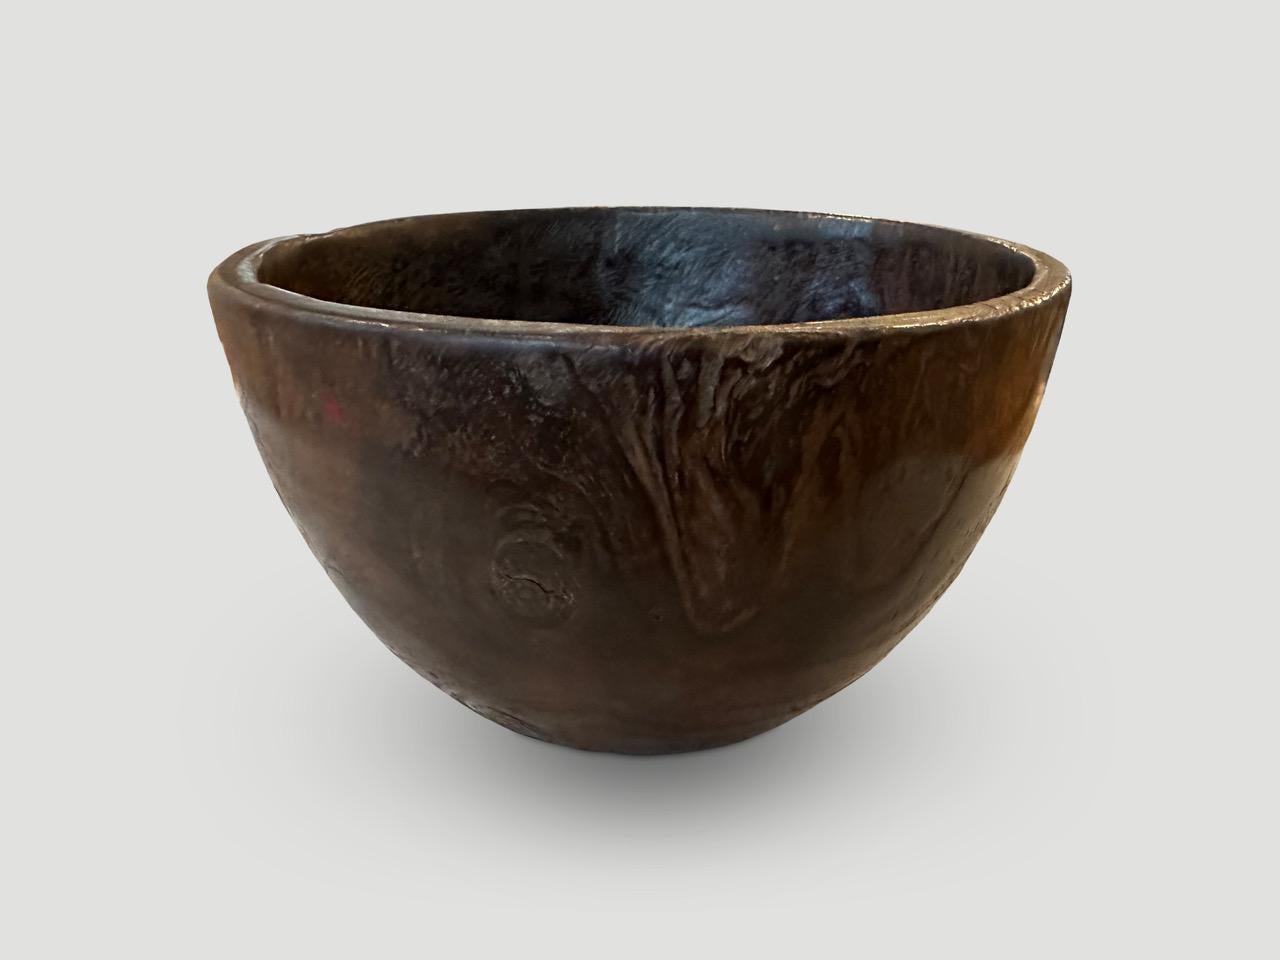 Magnifique bol antique sculpté à la main à partir d'une seule pièce de bois de teck.

Ce site  a été conçu dans l'esprit du Wabi-Sabi, une philosophie japonaise selon laquelle la beauté peut être trouvée dans l'imperfection et l'impermanence. C'est